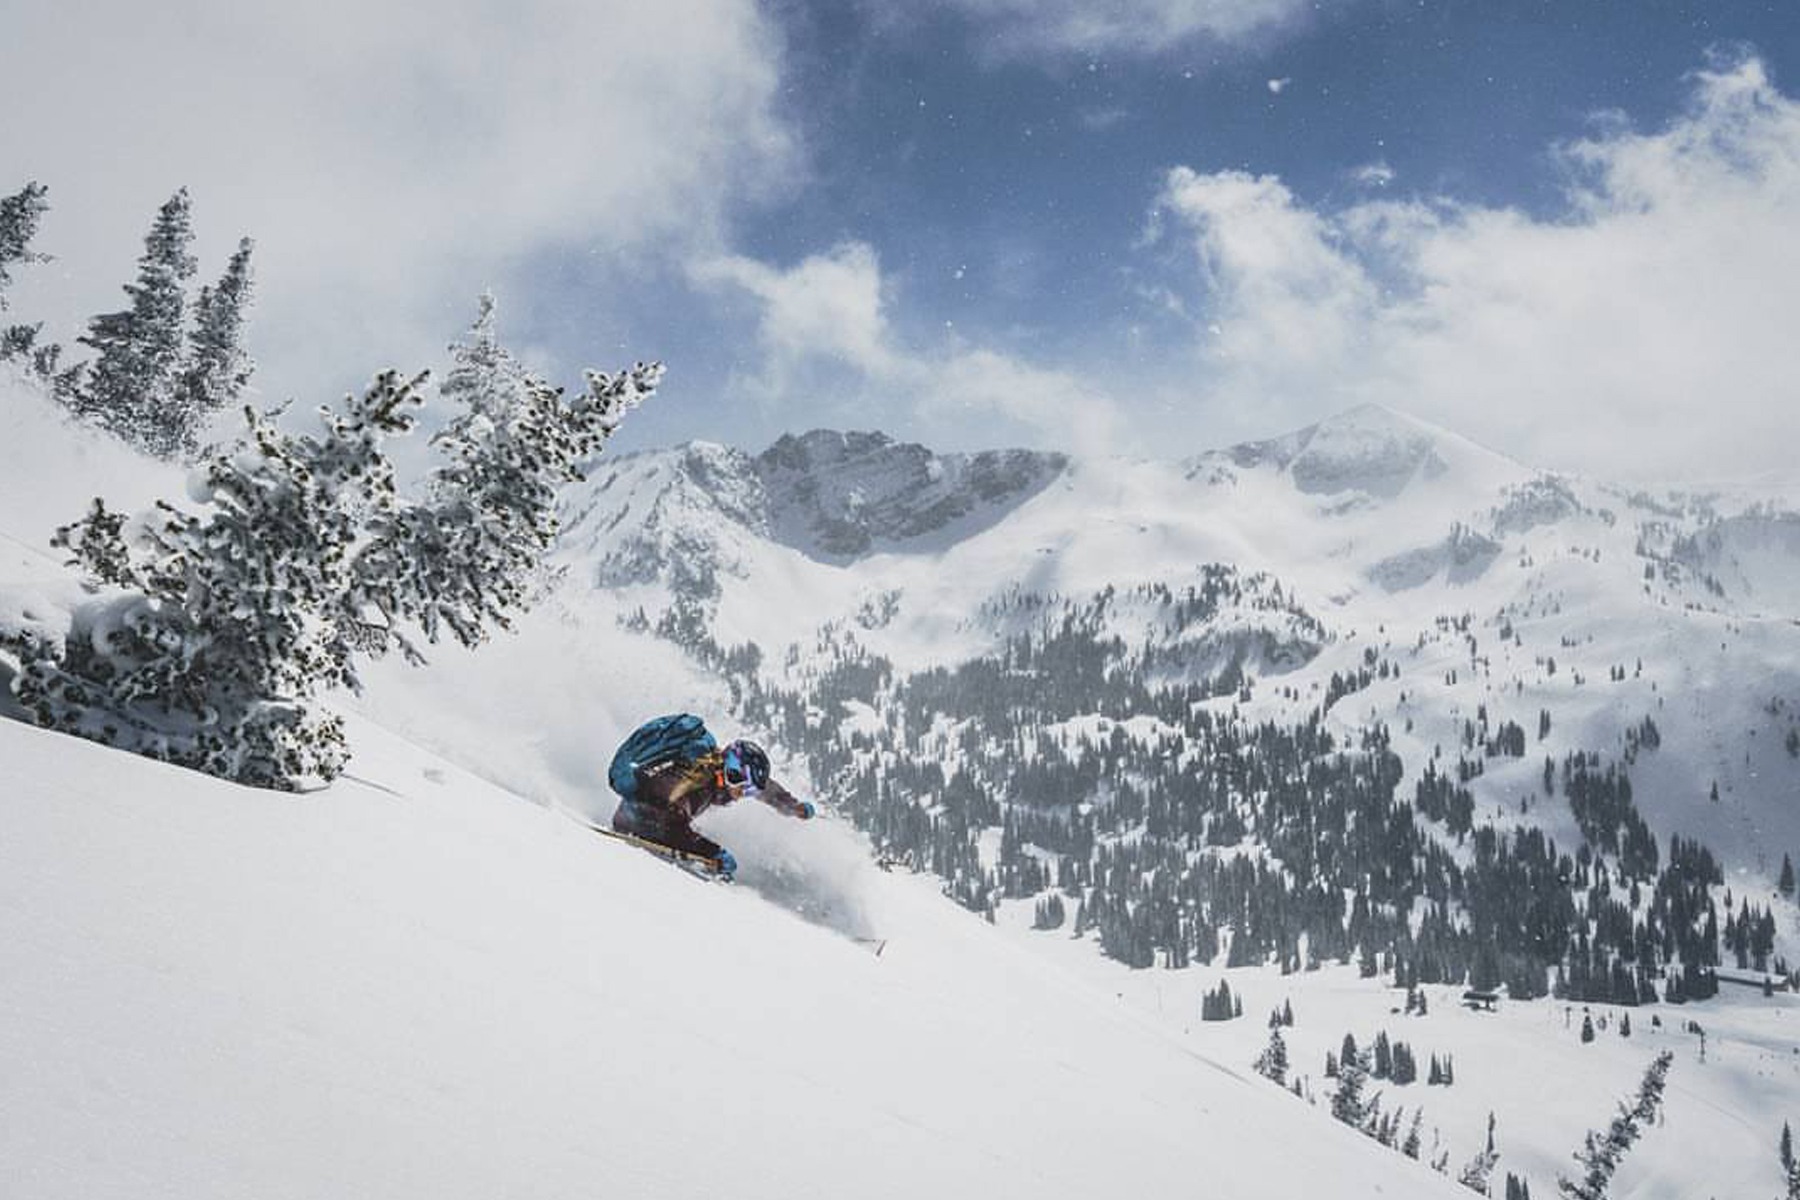 Utah ski resort opening & closing dates